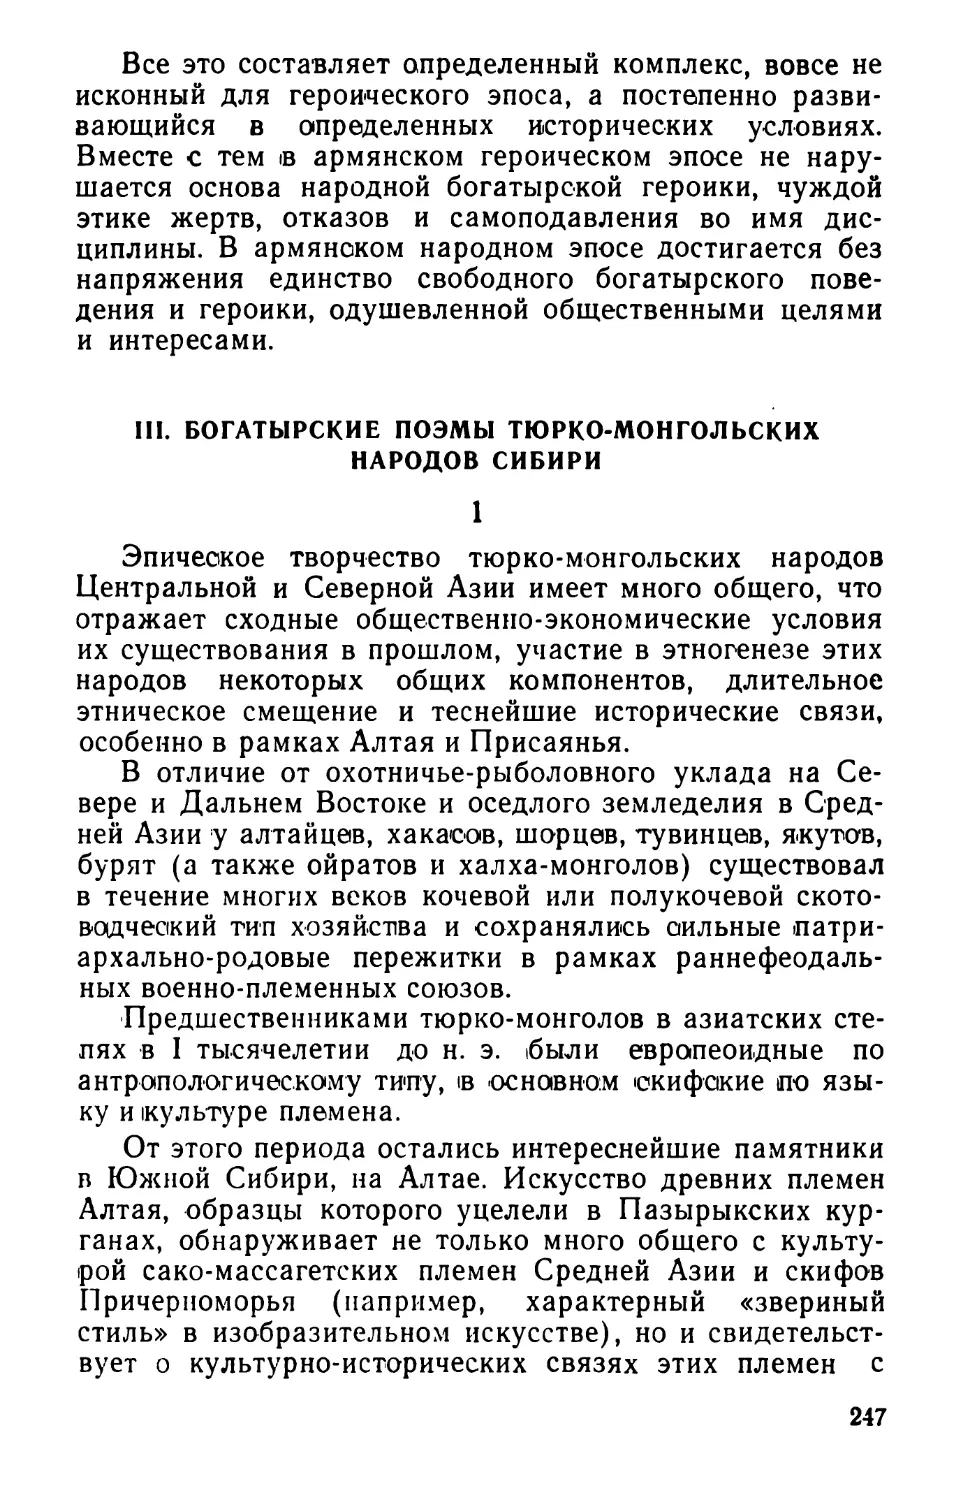 III. Богатырские поэмы тюрко-монгольских народов Сибири